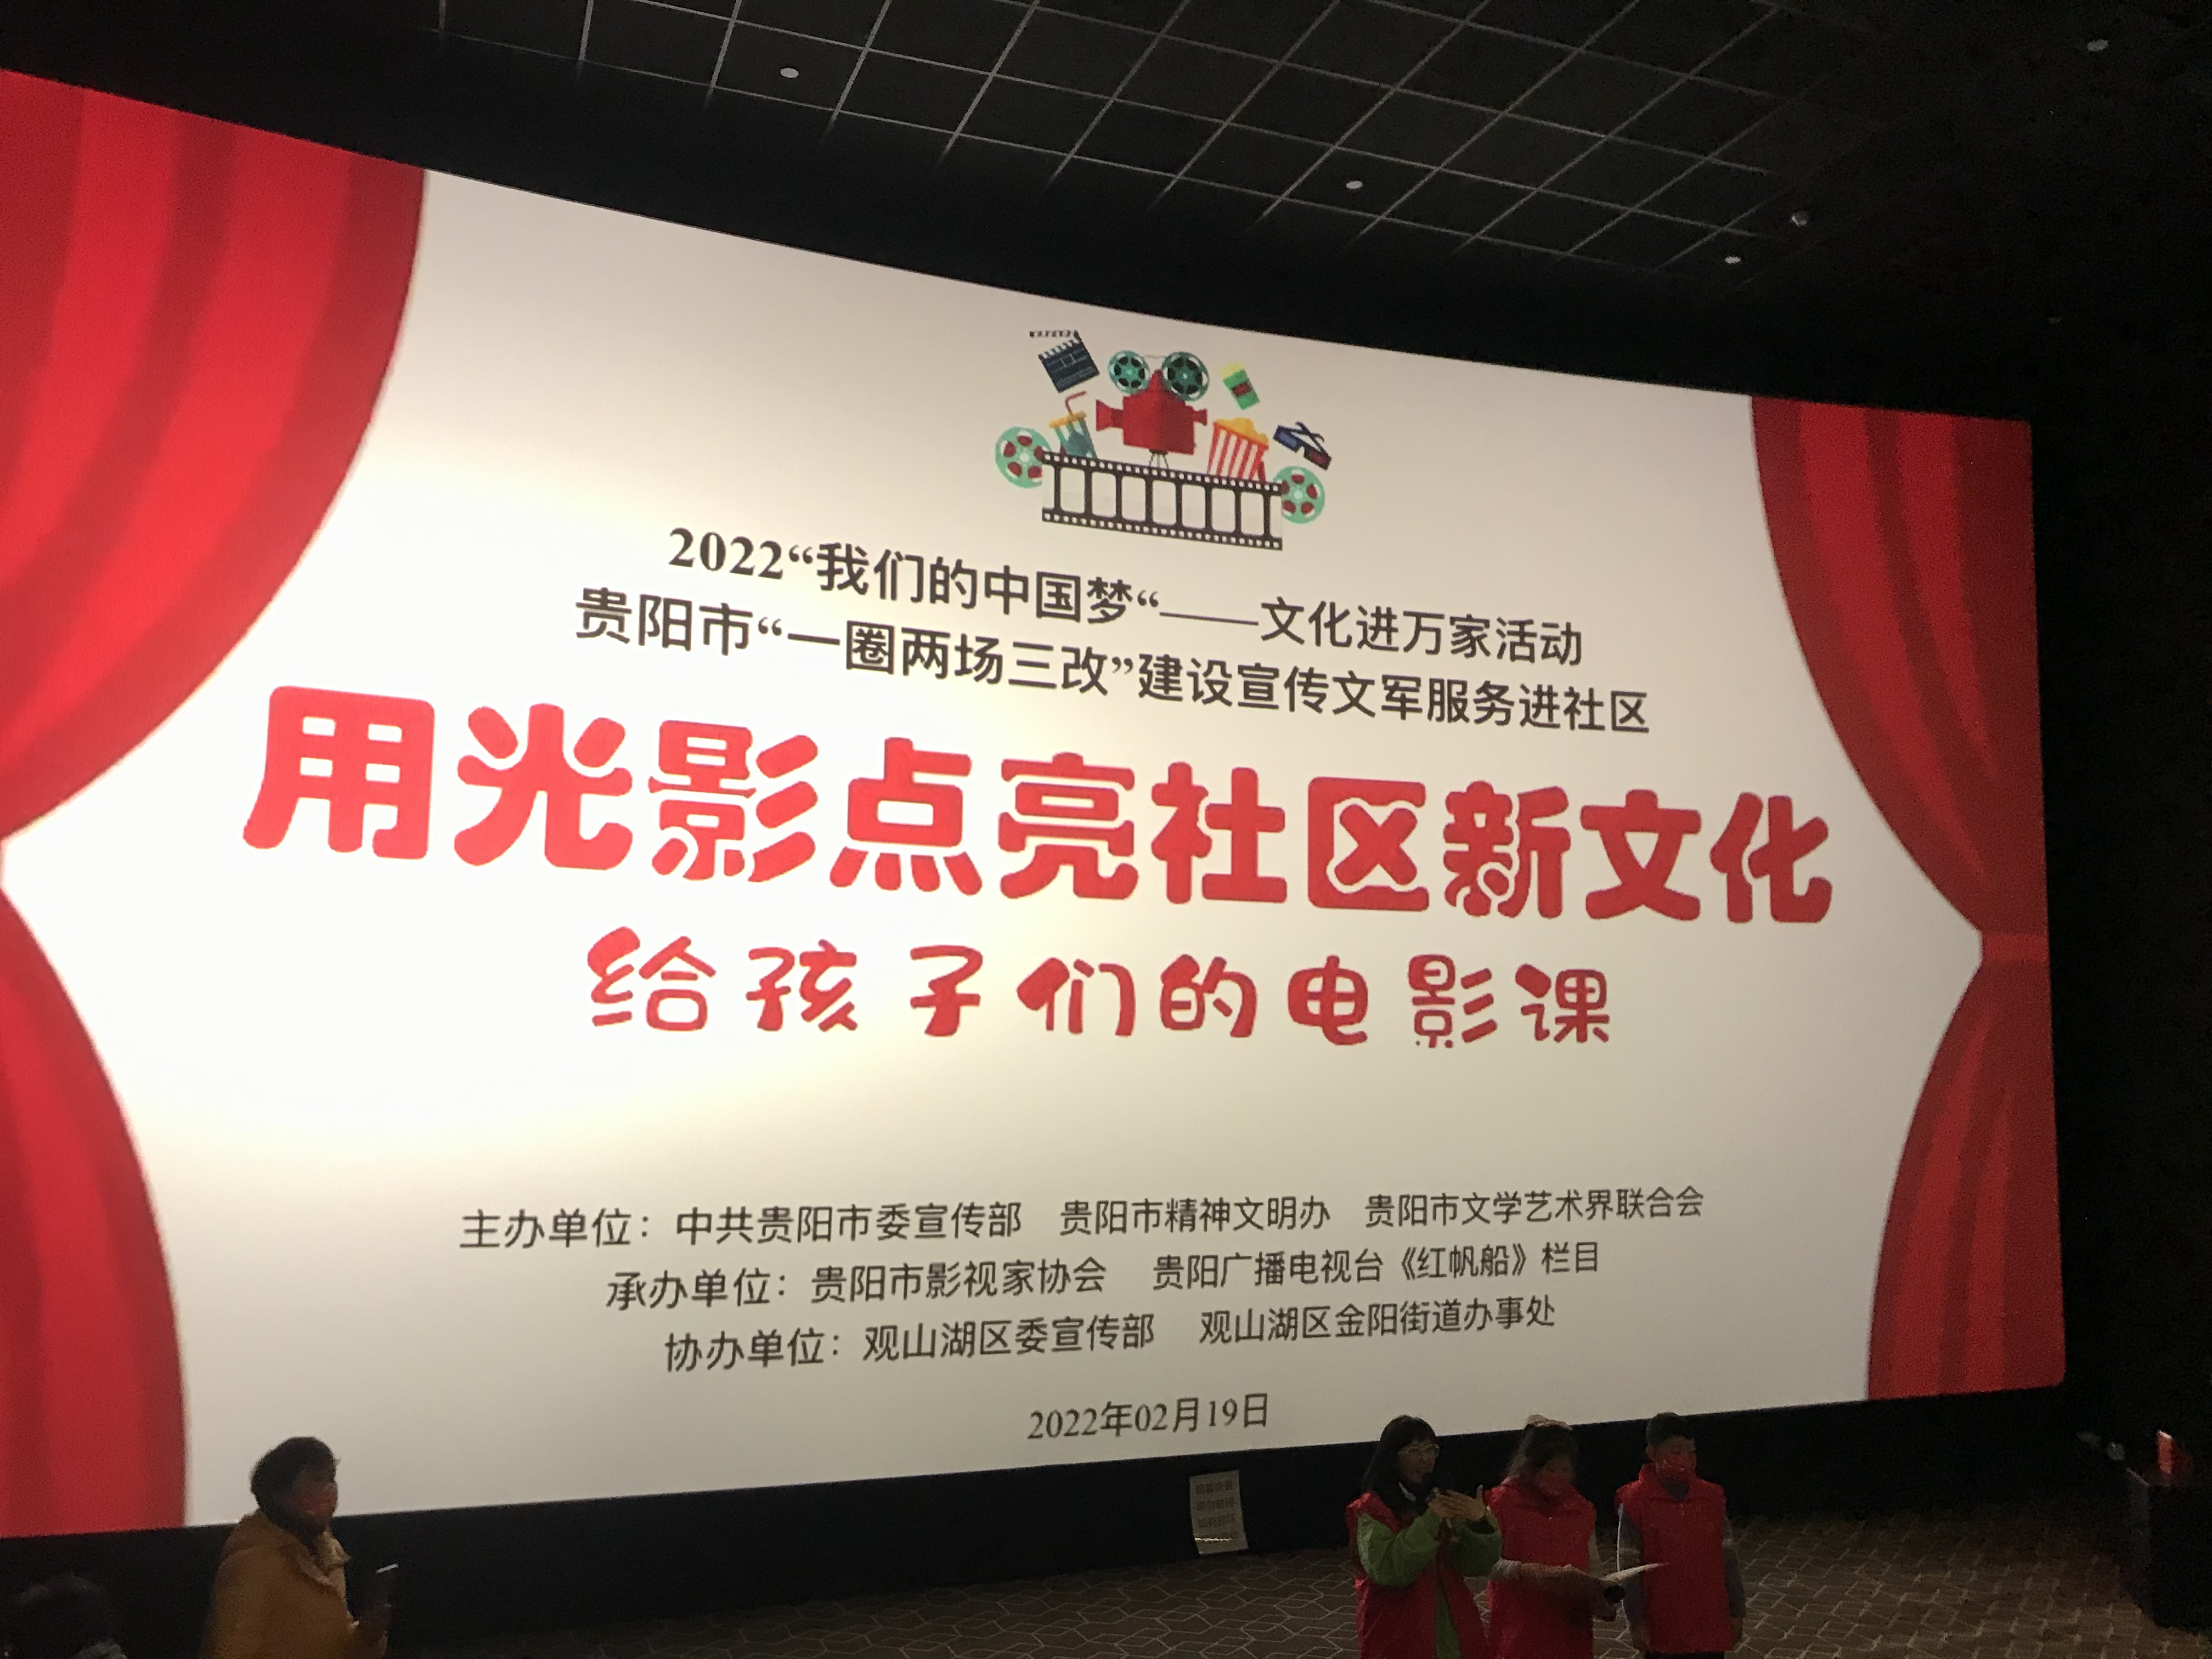 “用光影点亮社区新文化”系列活动之2022年贵阳首场社区亲子家庭观影活动举行